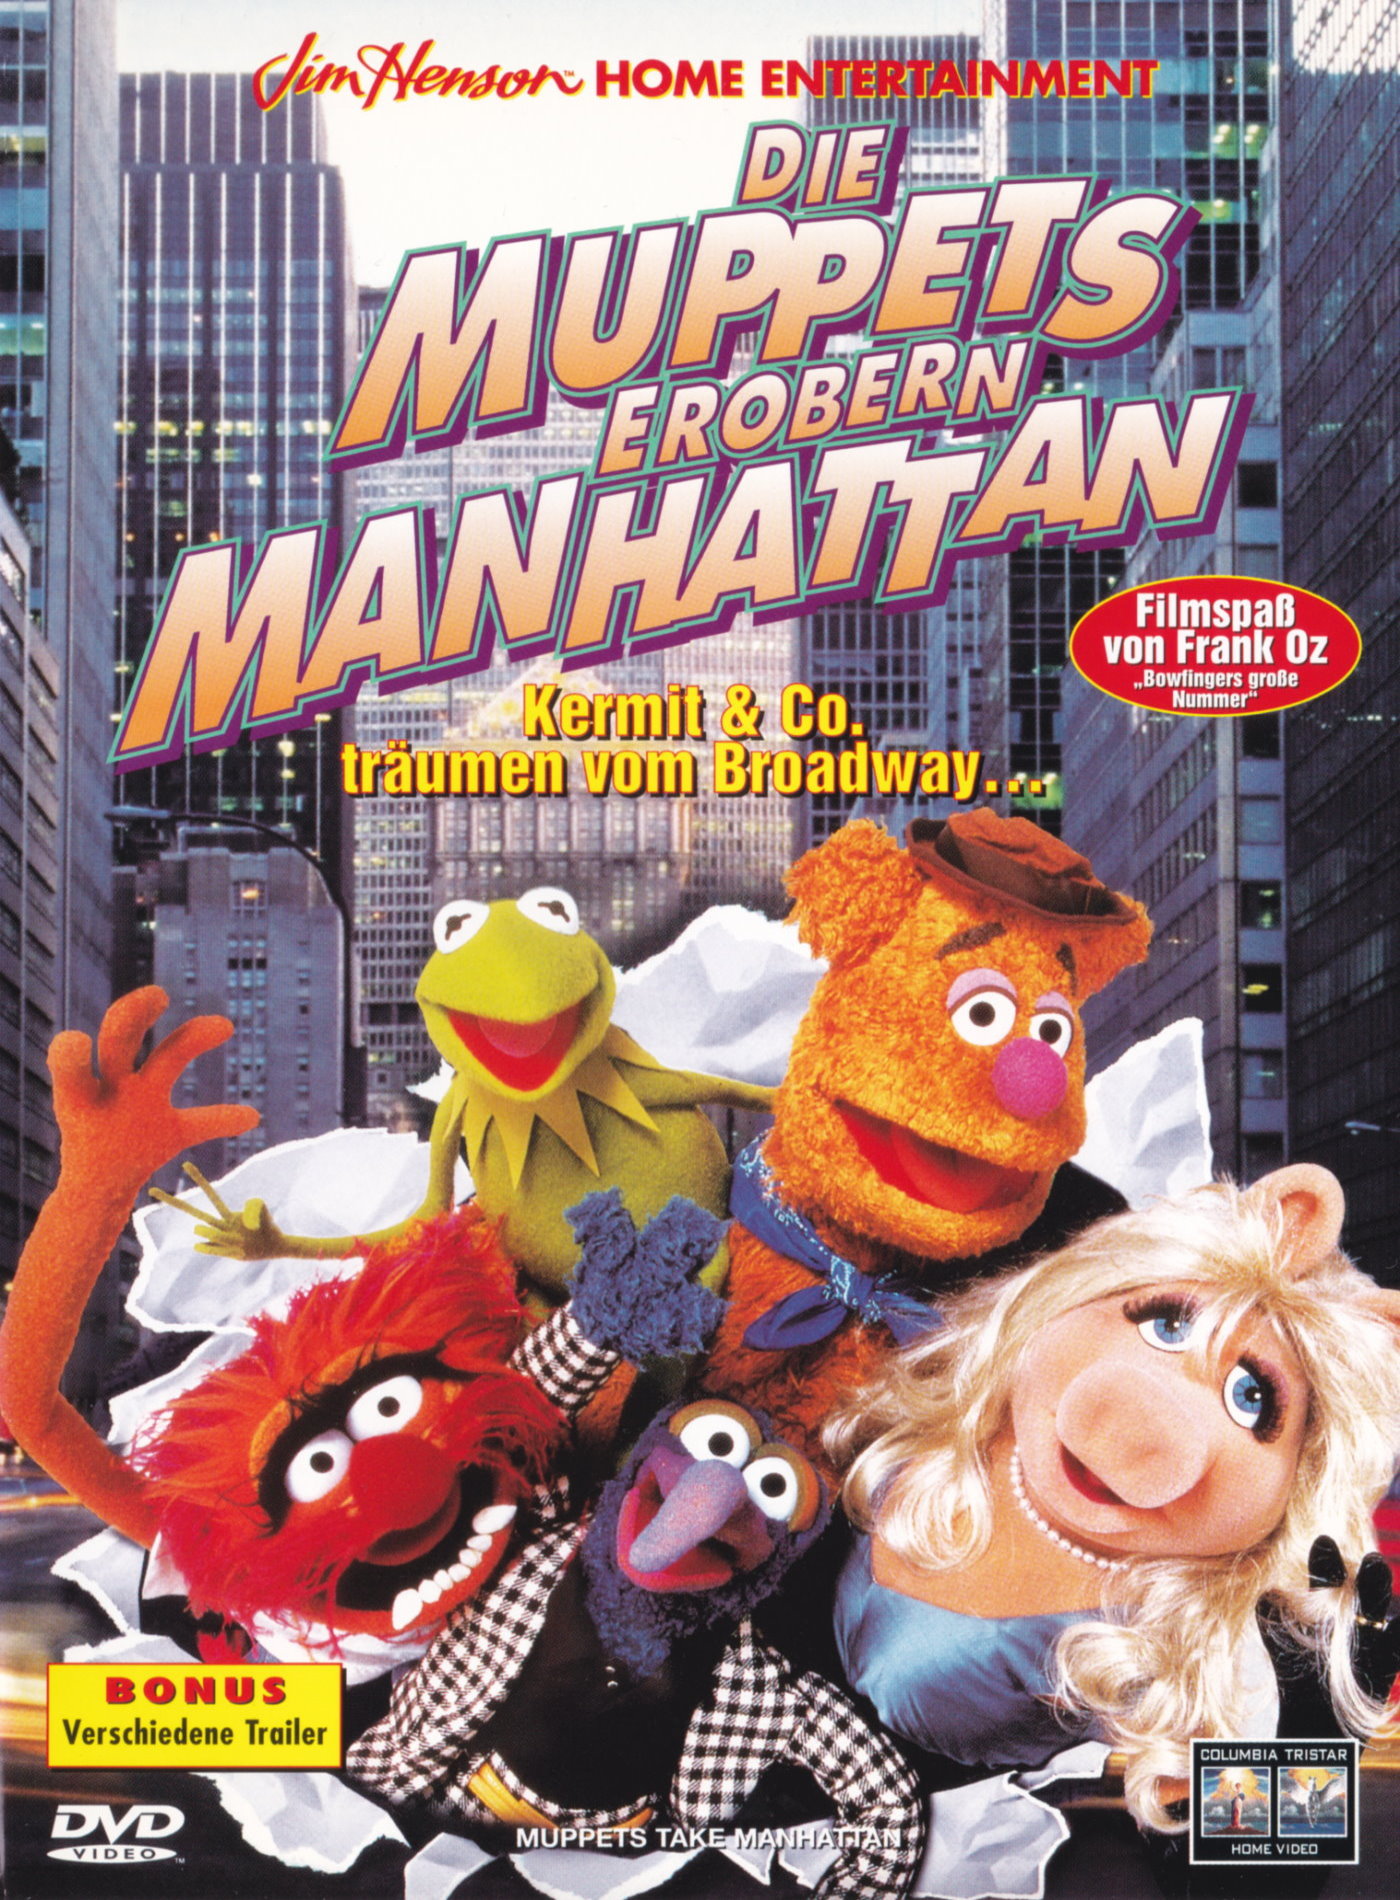 Cover - Die Muppets erobern Manhattan.jpg